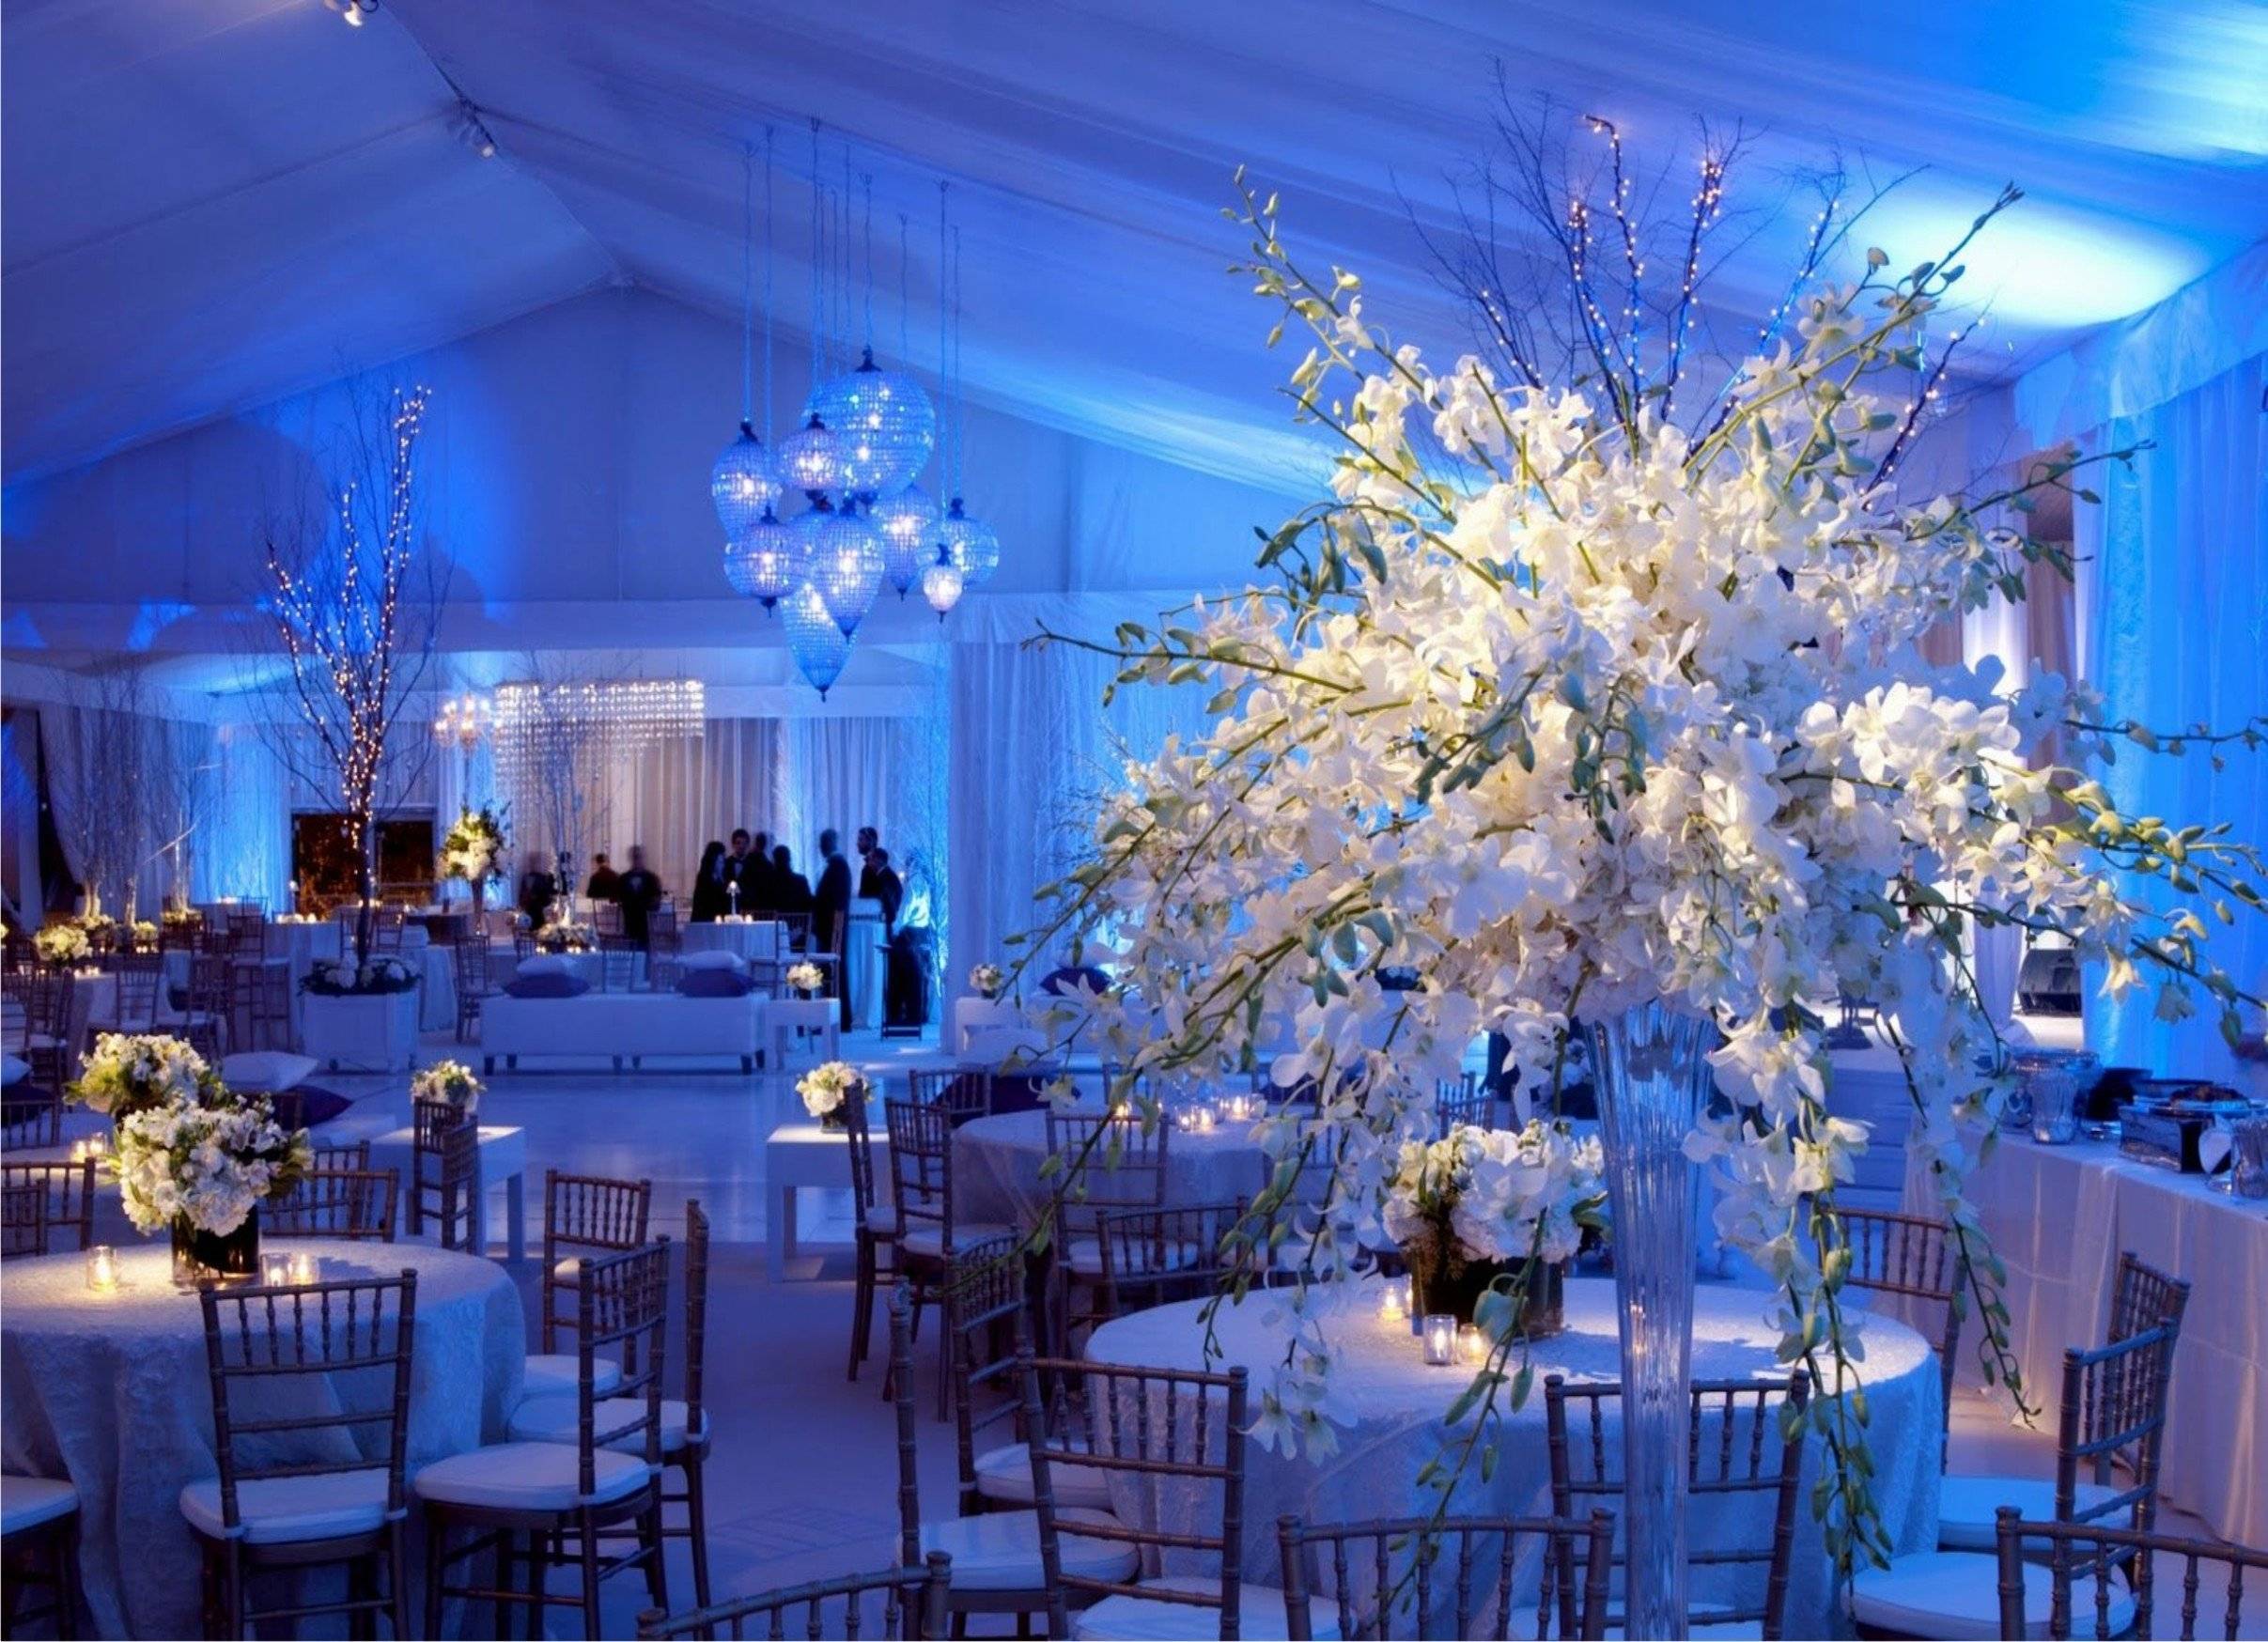 Оформление зимней свадьбы: идеи декора банкетного зала, сервировки стола, украшение пригласительных с примерами и фото в стиле зимней сказки